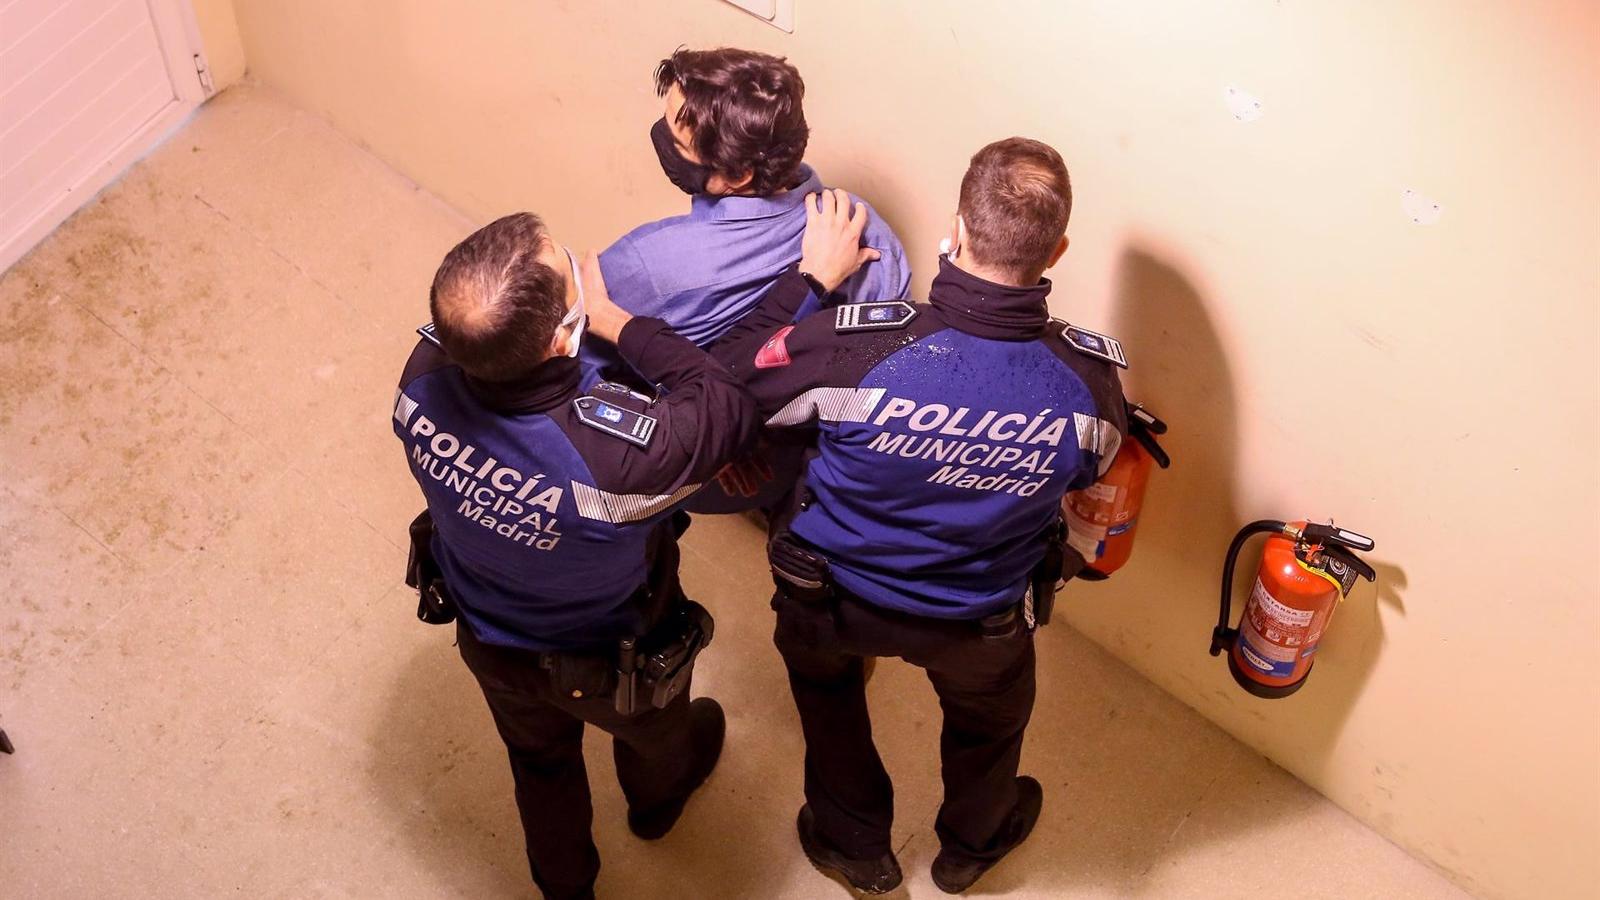 La Policía Municipal de Madrid detuvo o investigó a 4.300 personas en la primera mitad del año, 586 por violencia machista